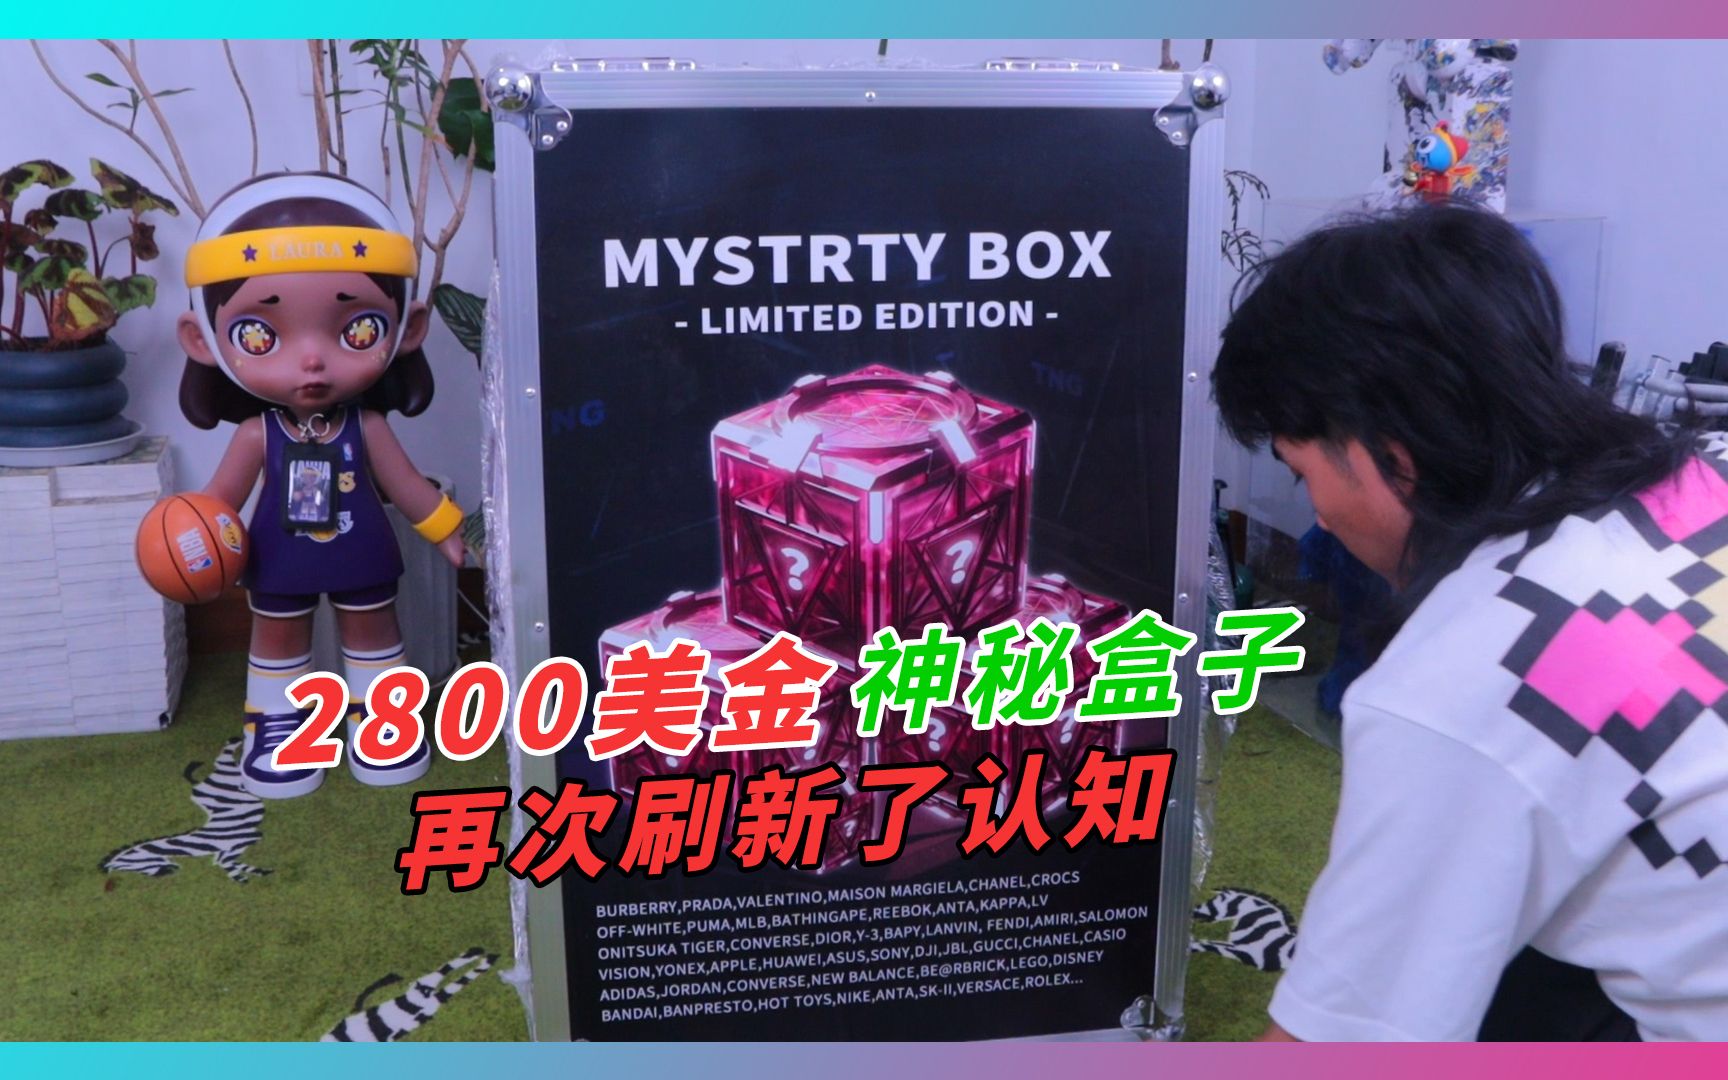 20000元的超稀有神秘盒子绝对刷新你的认知